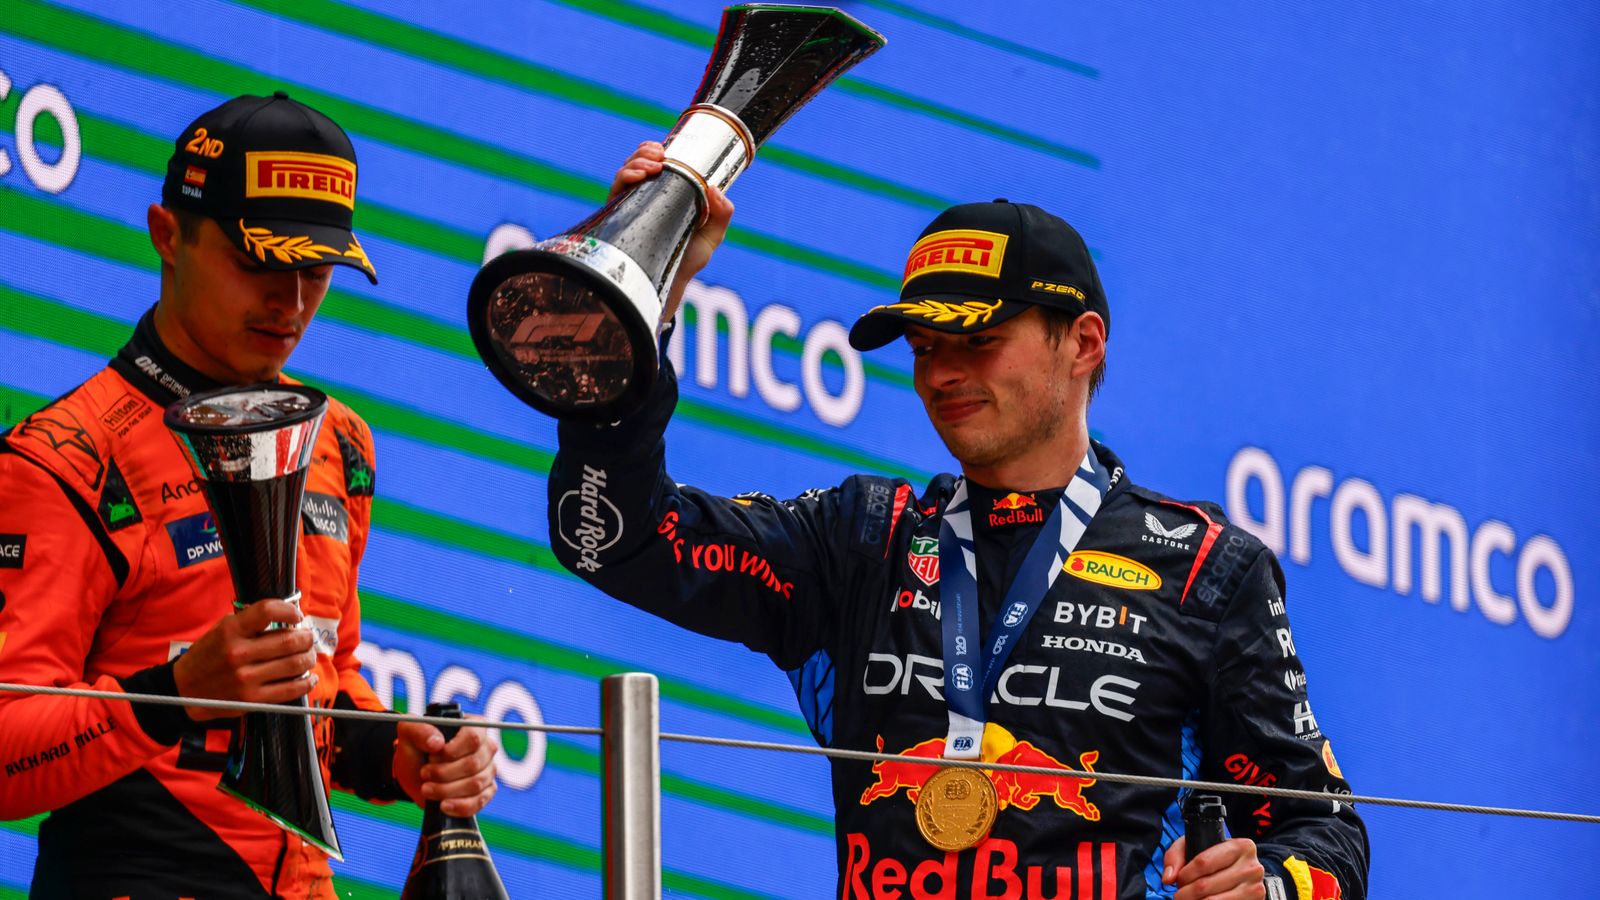 GP d’Espagne : Max Verstappen nie l’accusation de retour de Lando Norris pour la victoire alors que Lewis Hamilton fait son retour sur le podium |  Actualités F1